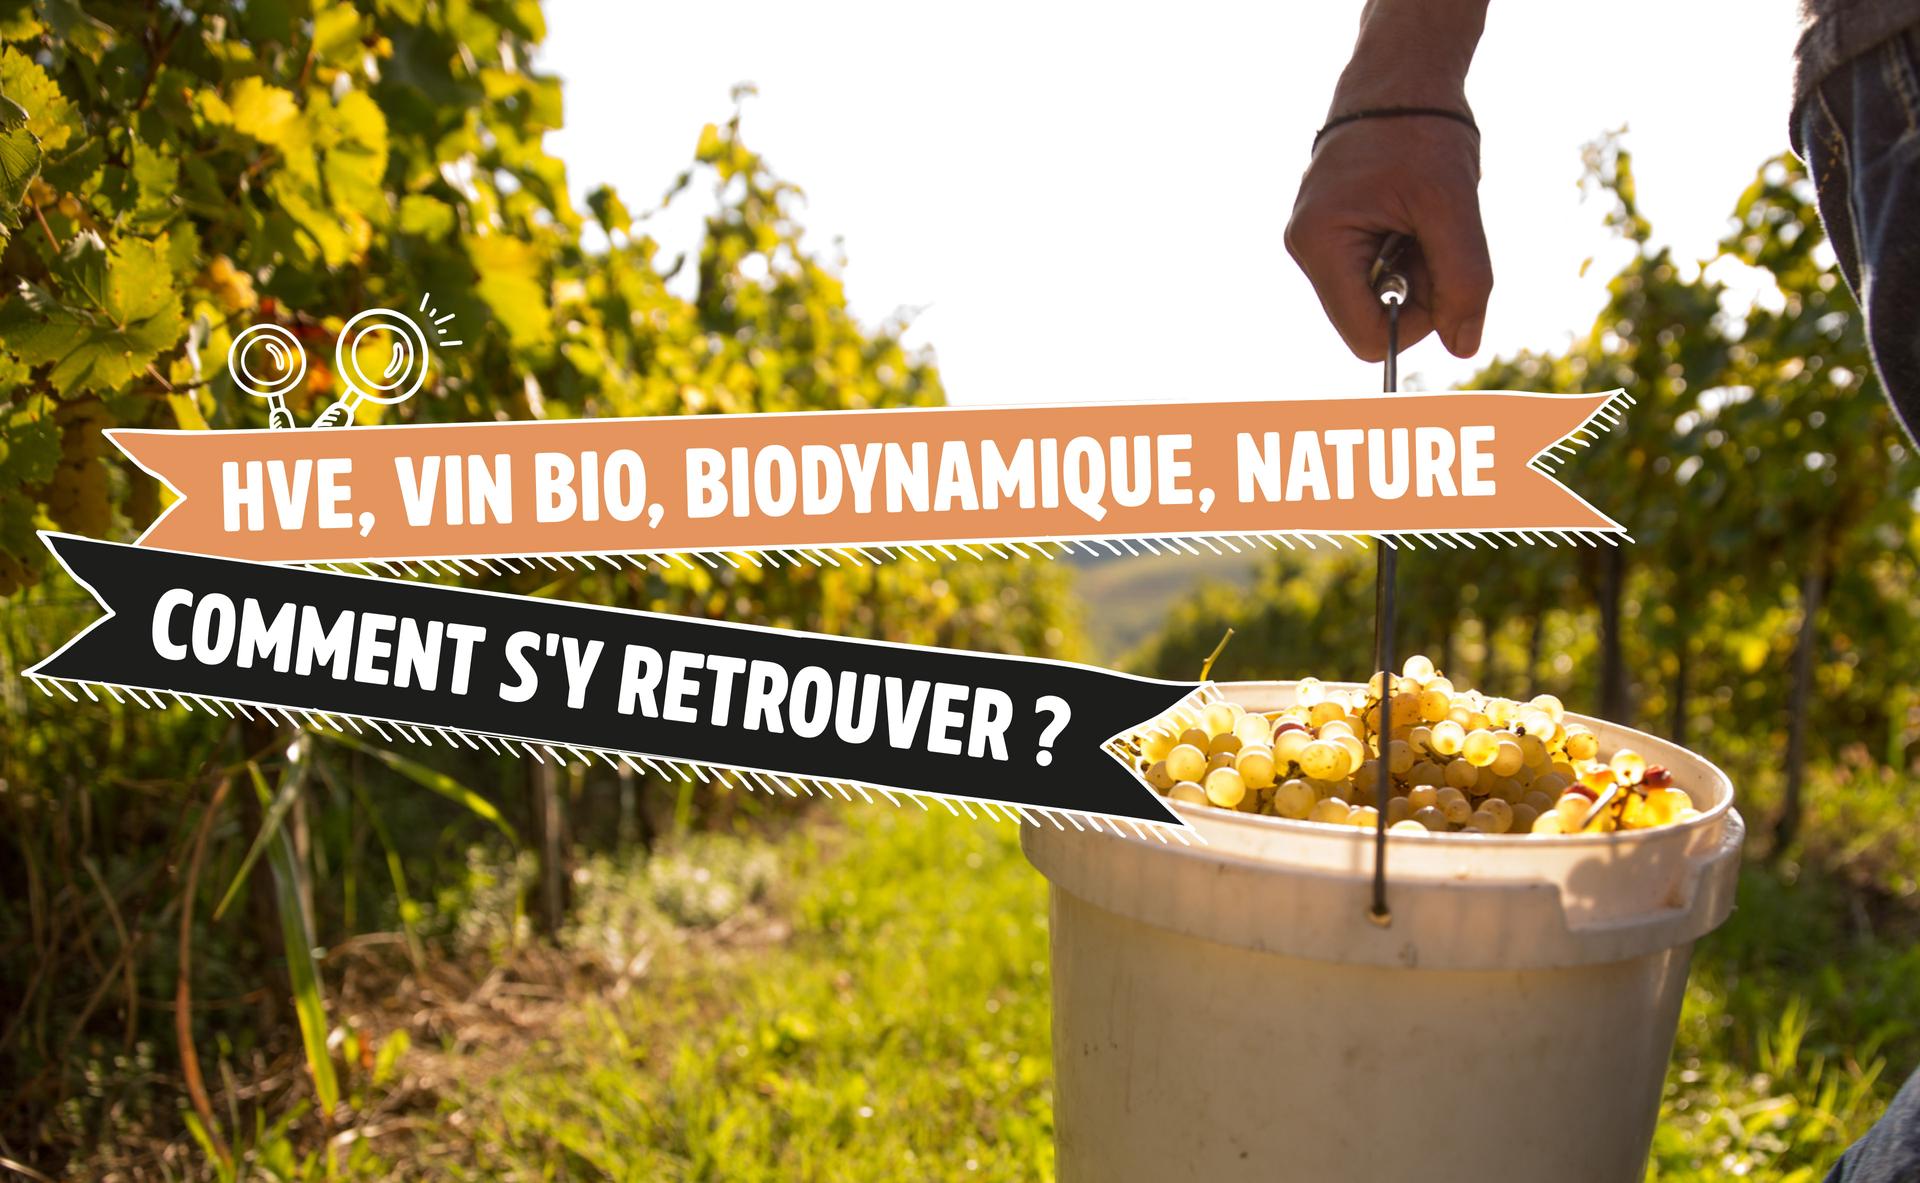 Haute Valeur Environnementale, vin bio, biodynamique, nature, comment s'y retrouver ?